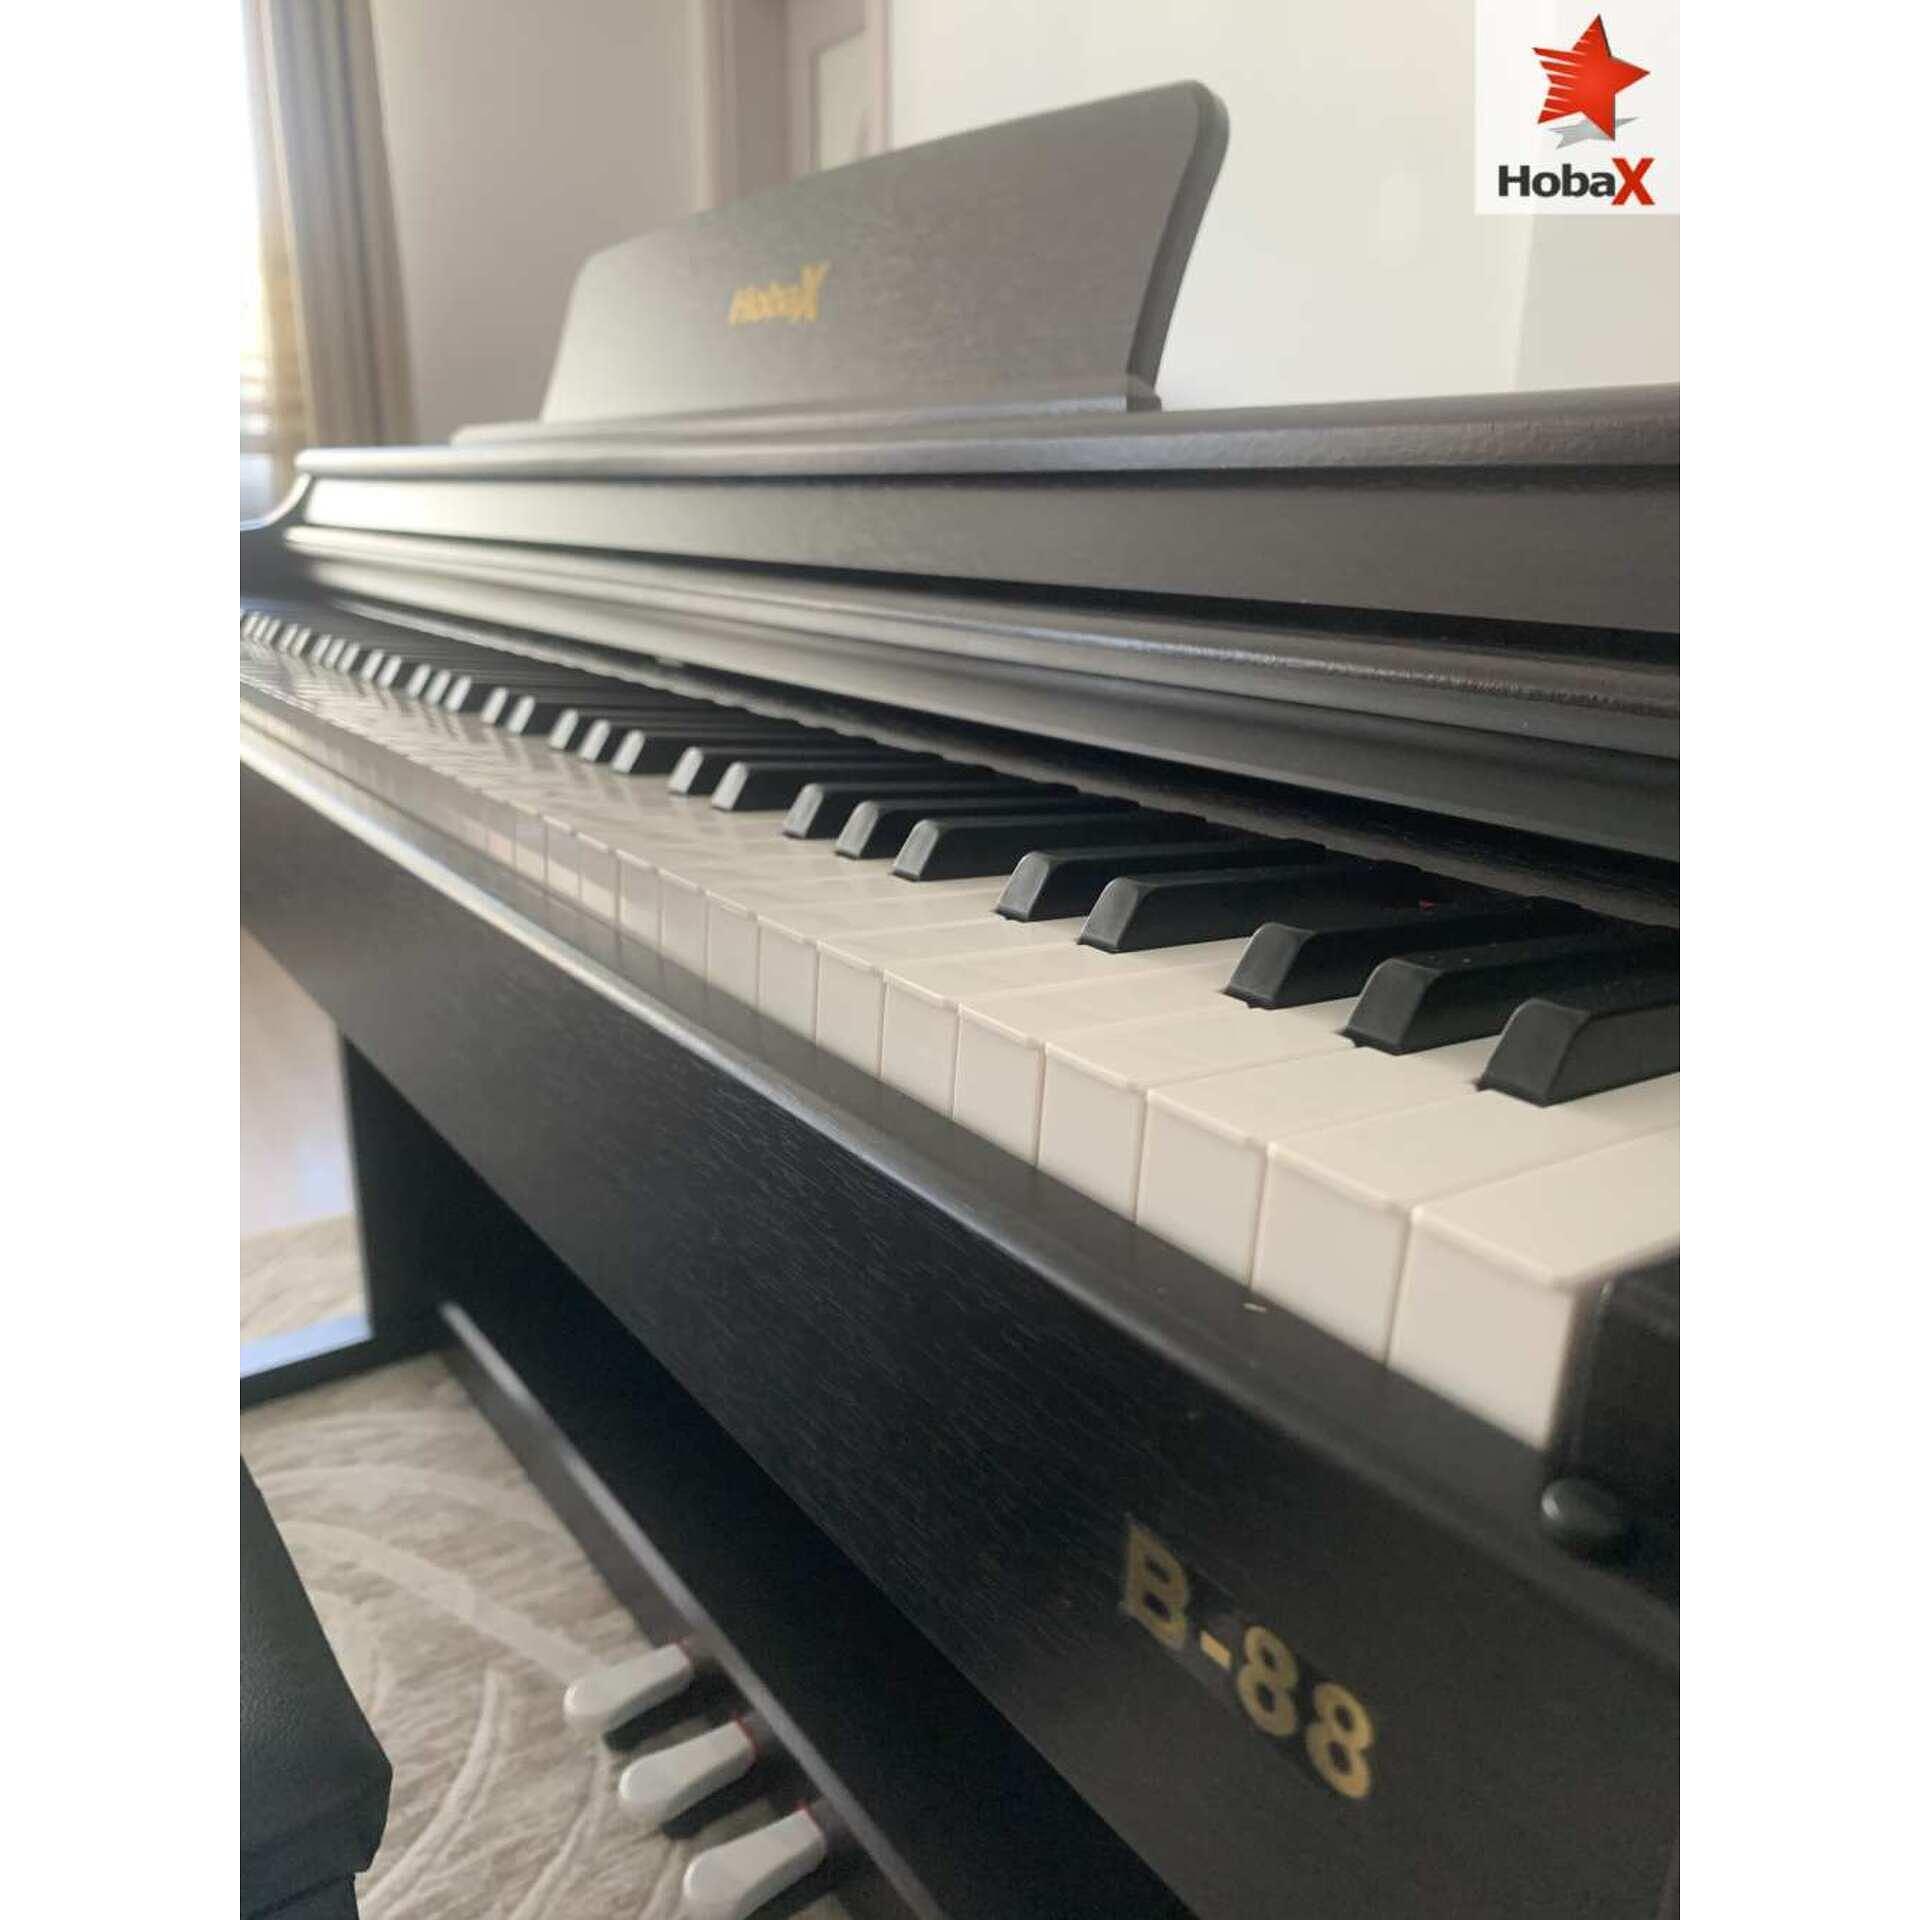 Комплект Дигитално пиано Hobax B-88, тъмен цвят, 88 клавиша HAMMER ACTION тежка клавиатура, 7 октави, 8 звуци, 128 ритми, с тройна педалиера. +3 ПОДАРЪКА – слушалки,стикери за клавиши и пейка